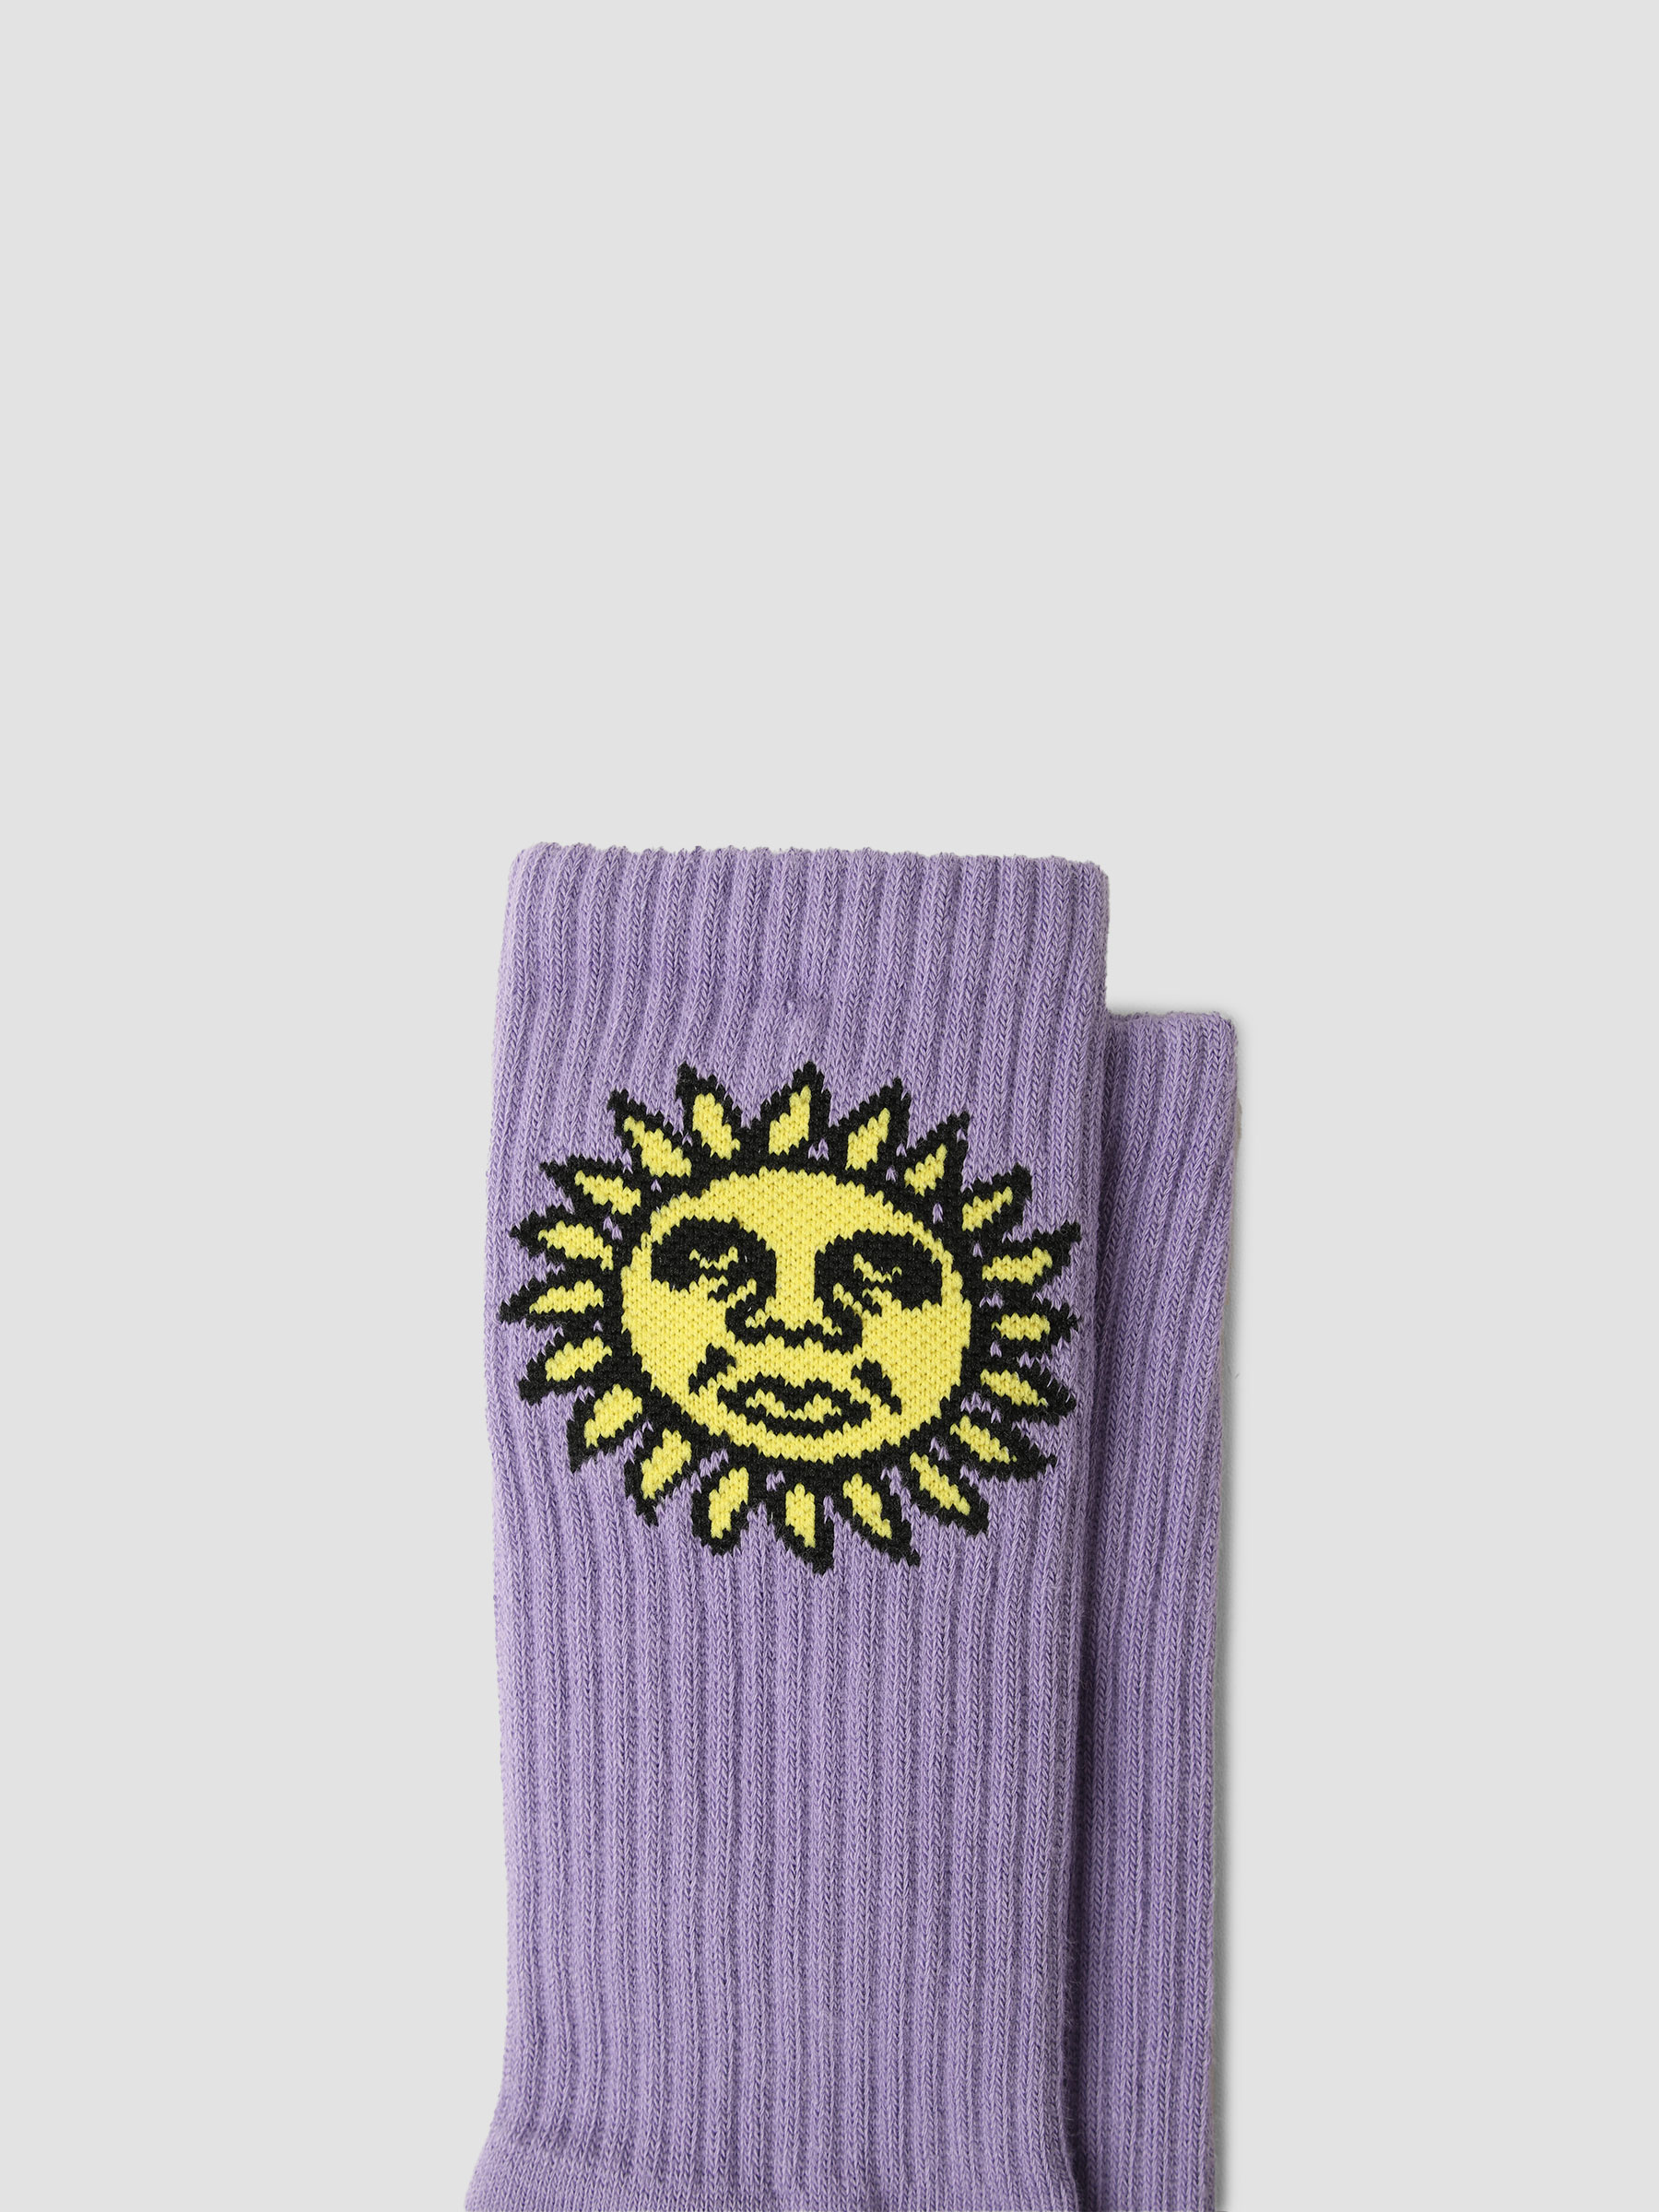 Obey Sunshine Socks Lavender Silk 100260161